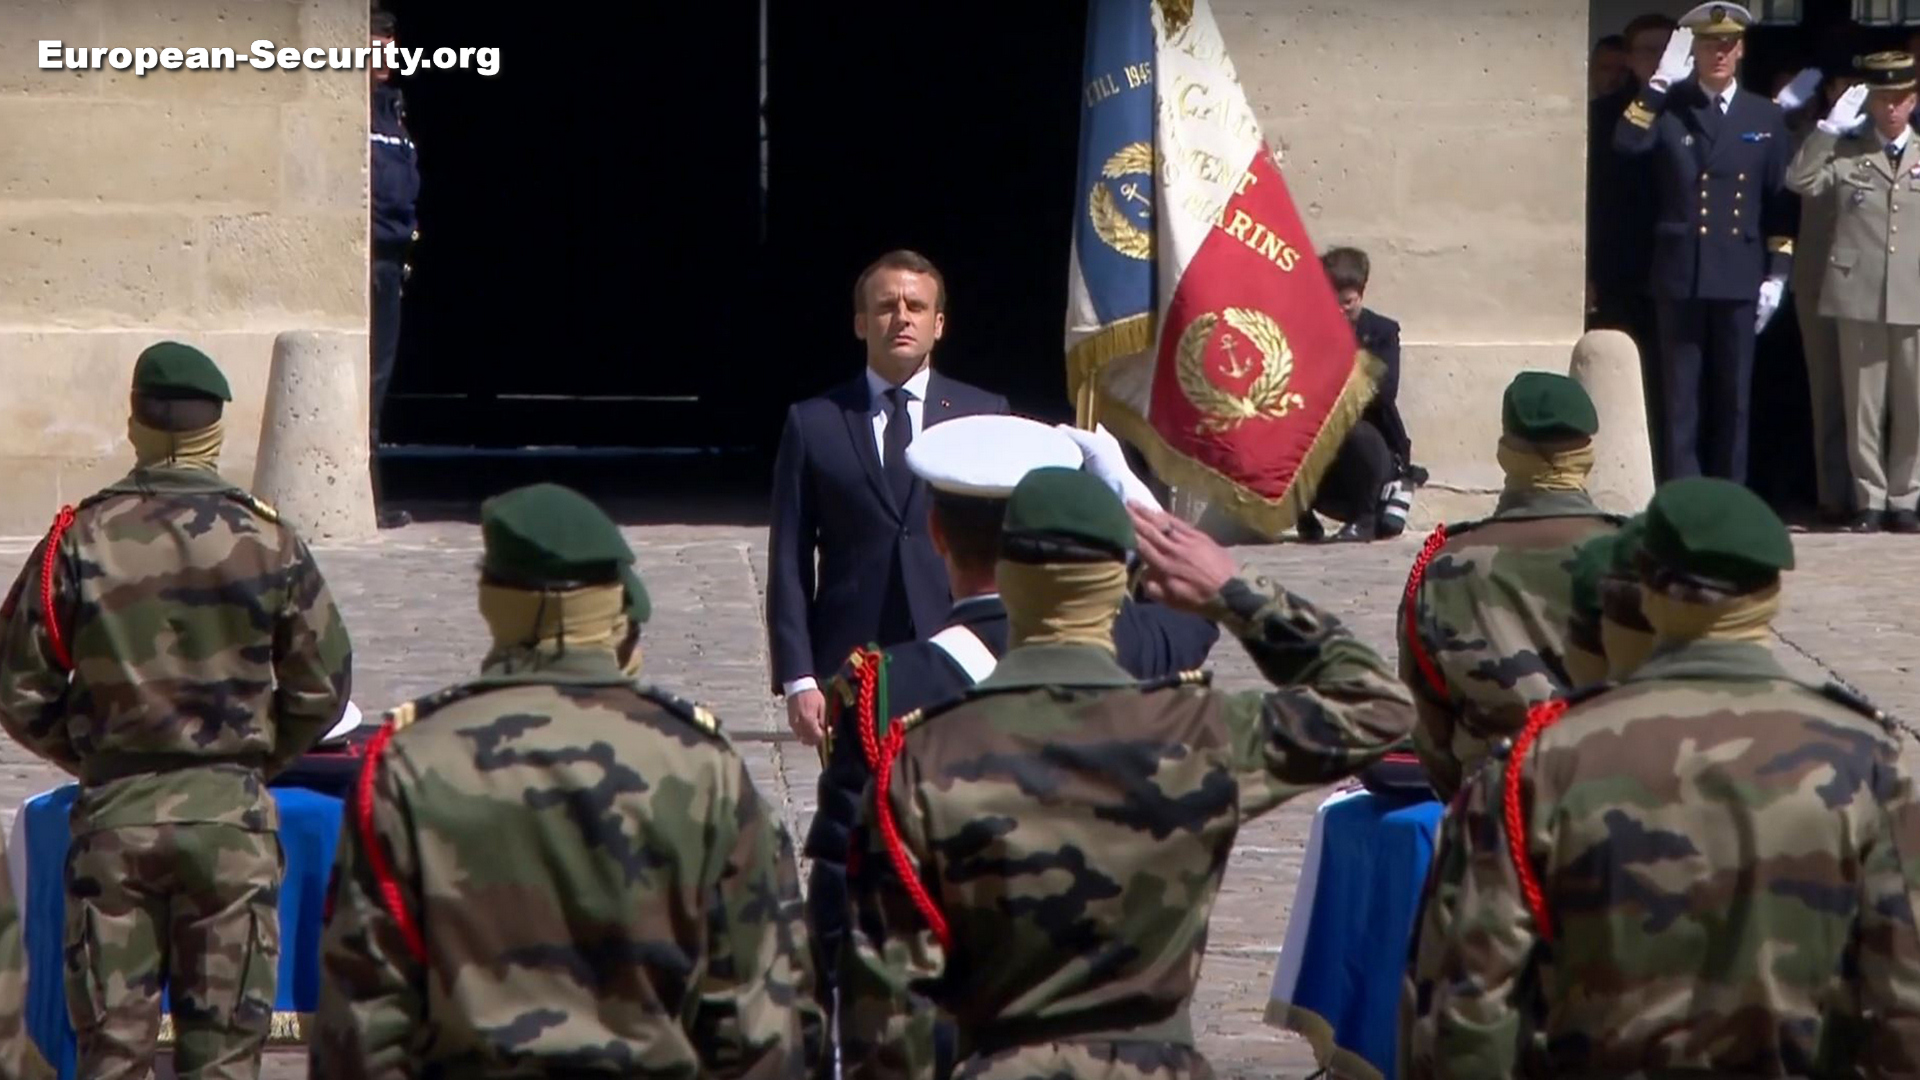 Le président va décorer les deux commandos morts pour la France -- Photo European-Security. -